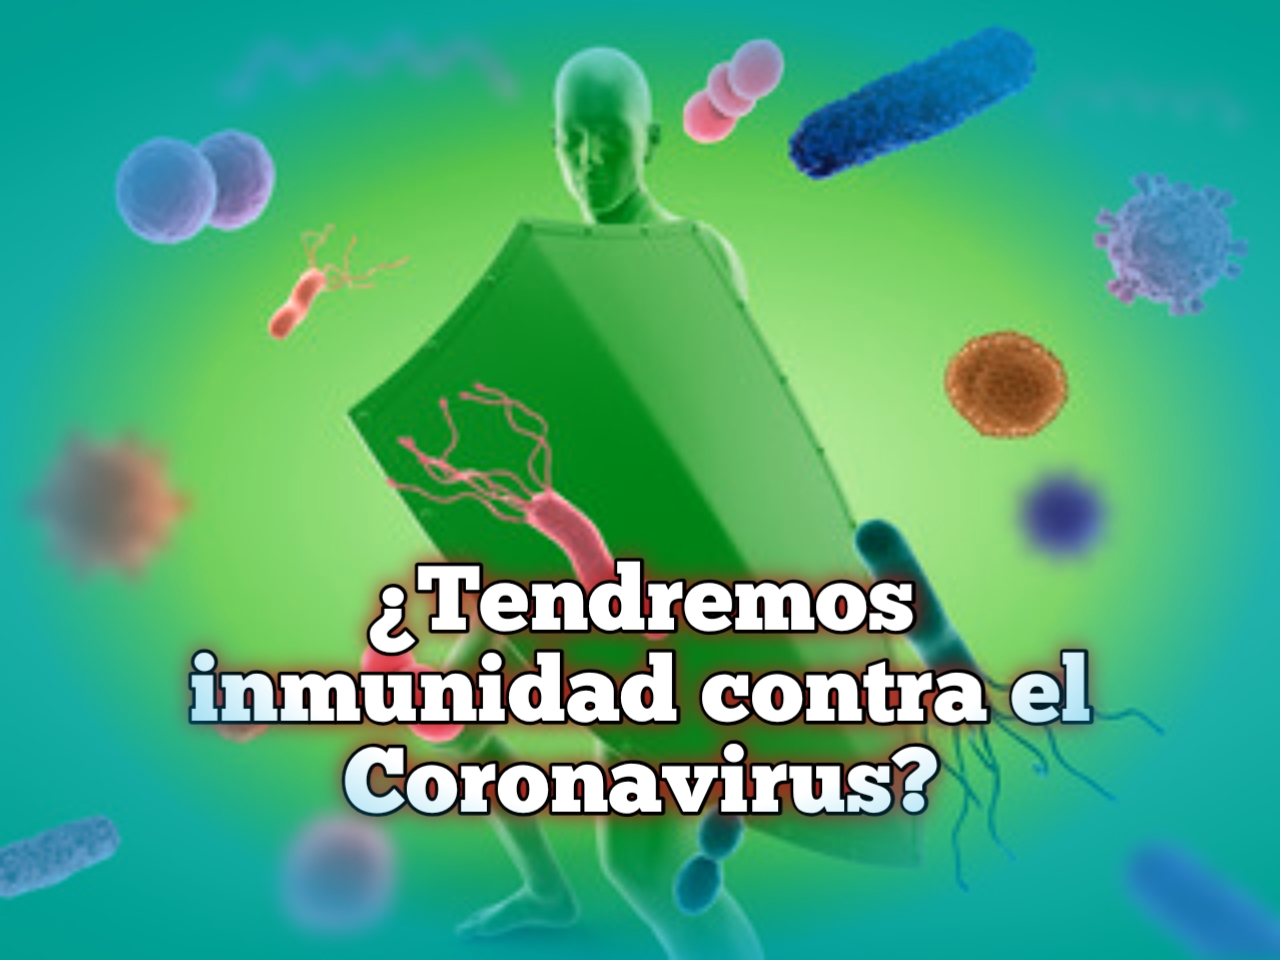 ¿Tendremos inmunidad contra el Coronavirus?